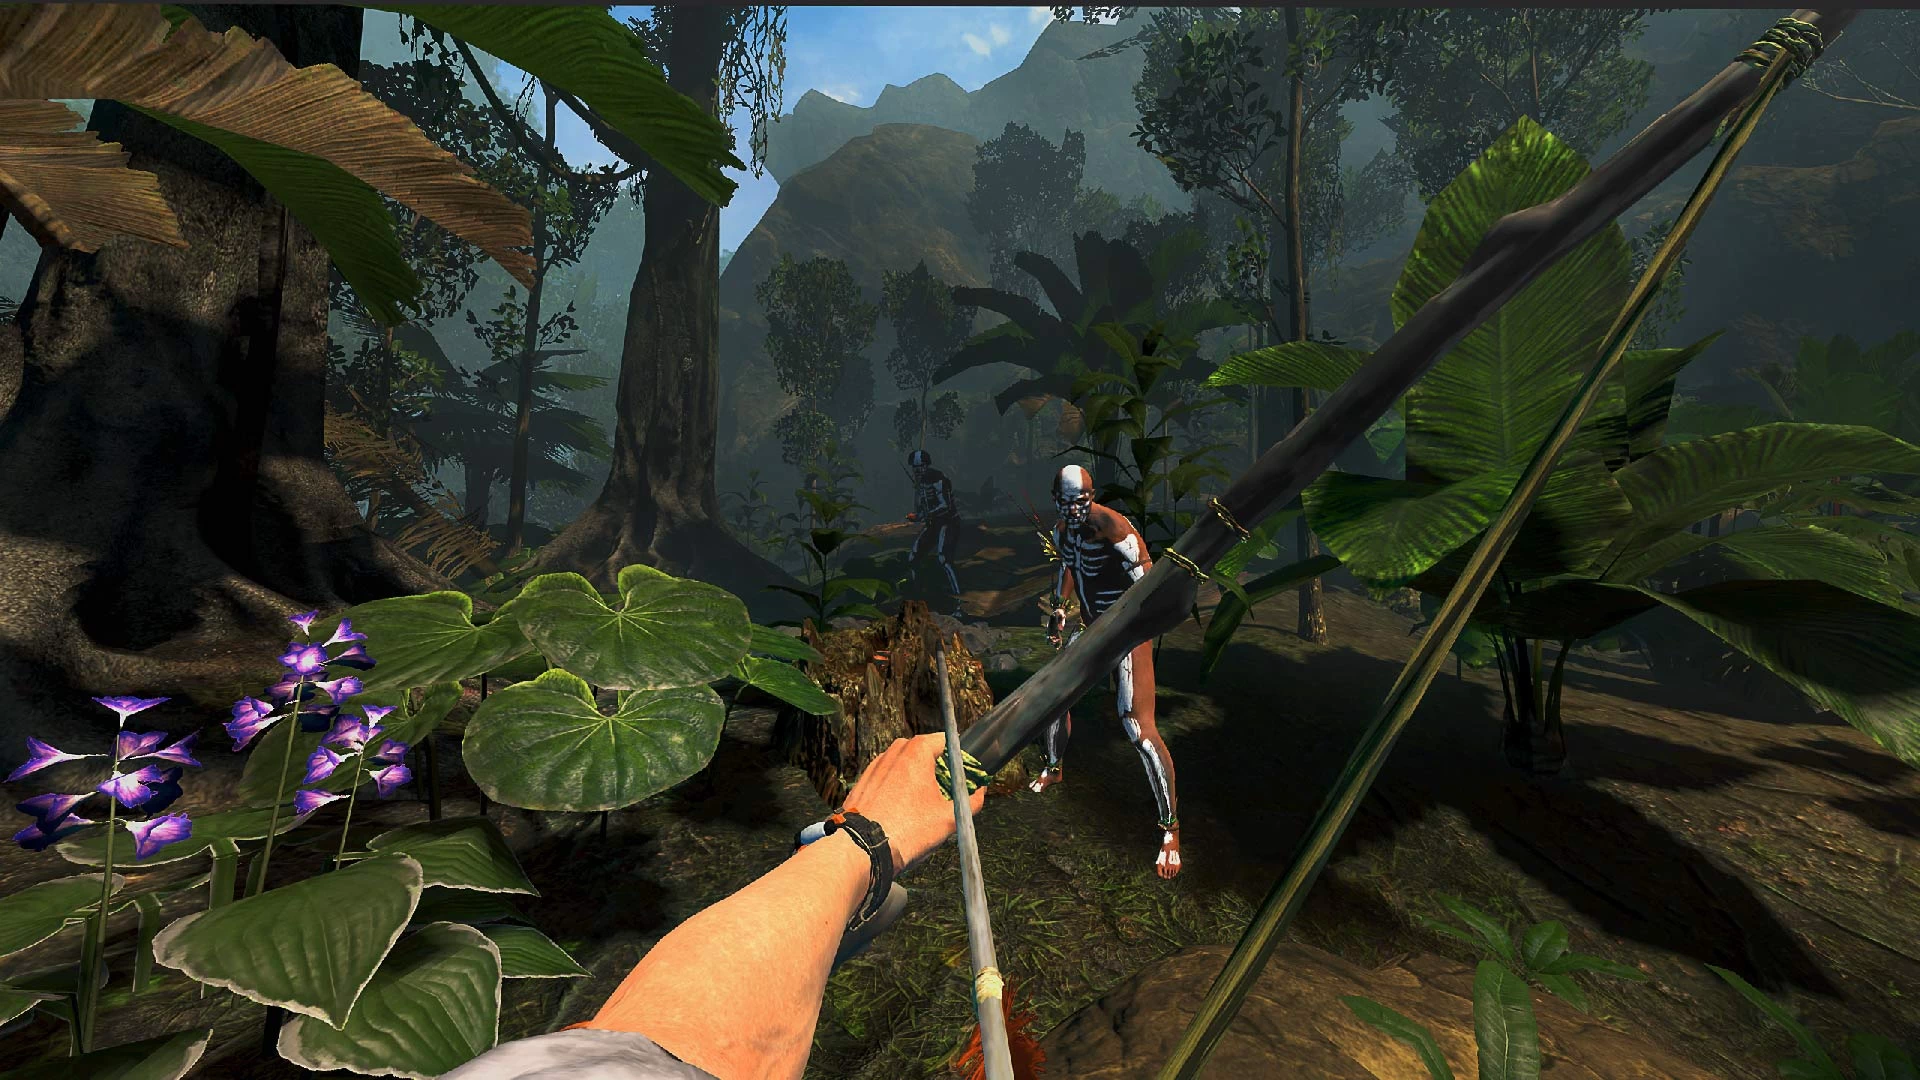 Студия Incuvo Games, создавшая игры Green Hell и Green Hell VR, объявила о нескором выходе к VR-игре нового дополнения Spirits of Amazonia.